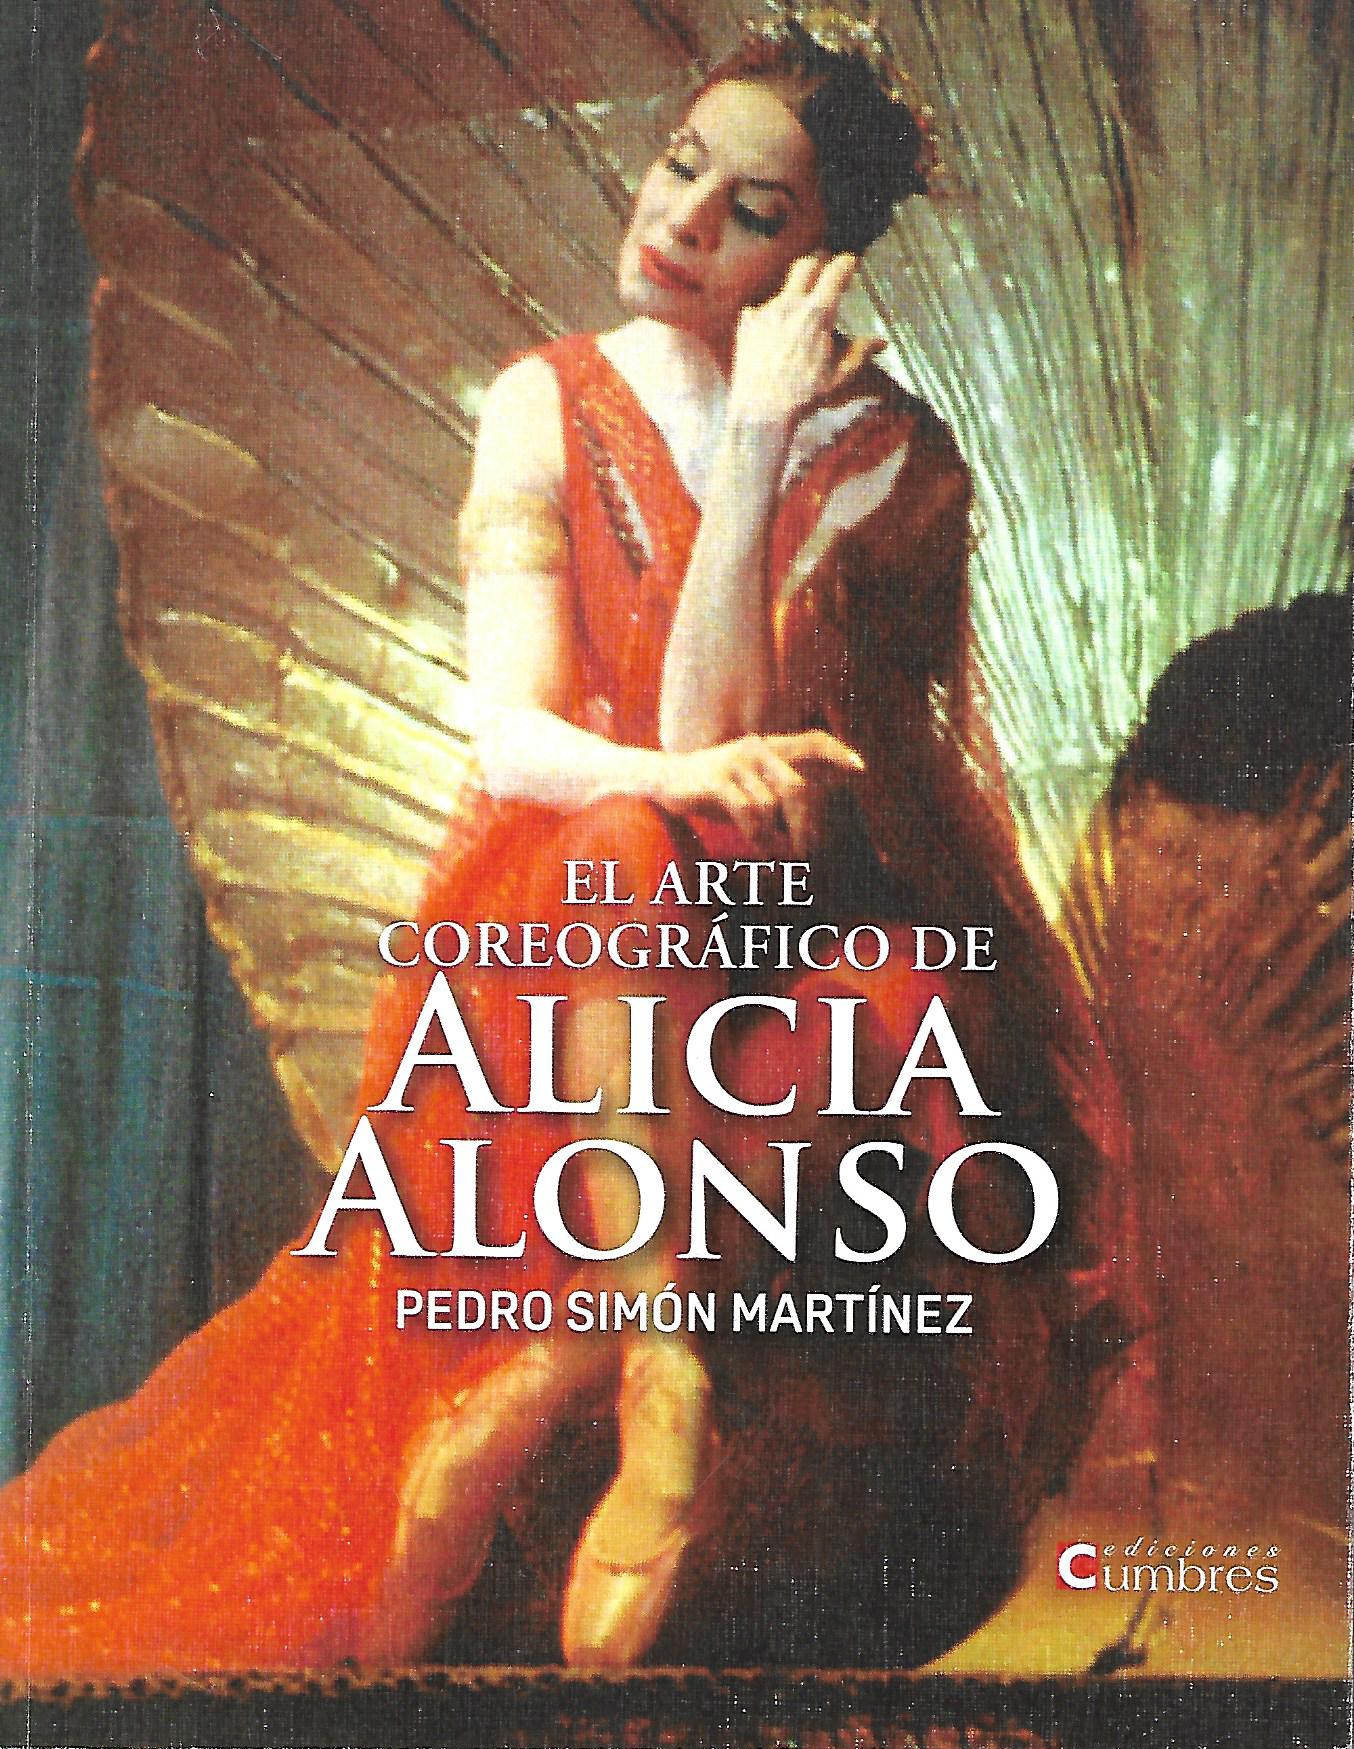 El arte coreogrfico de Alicia Alonso